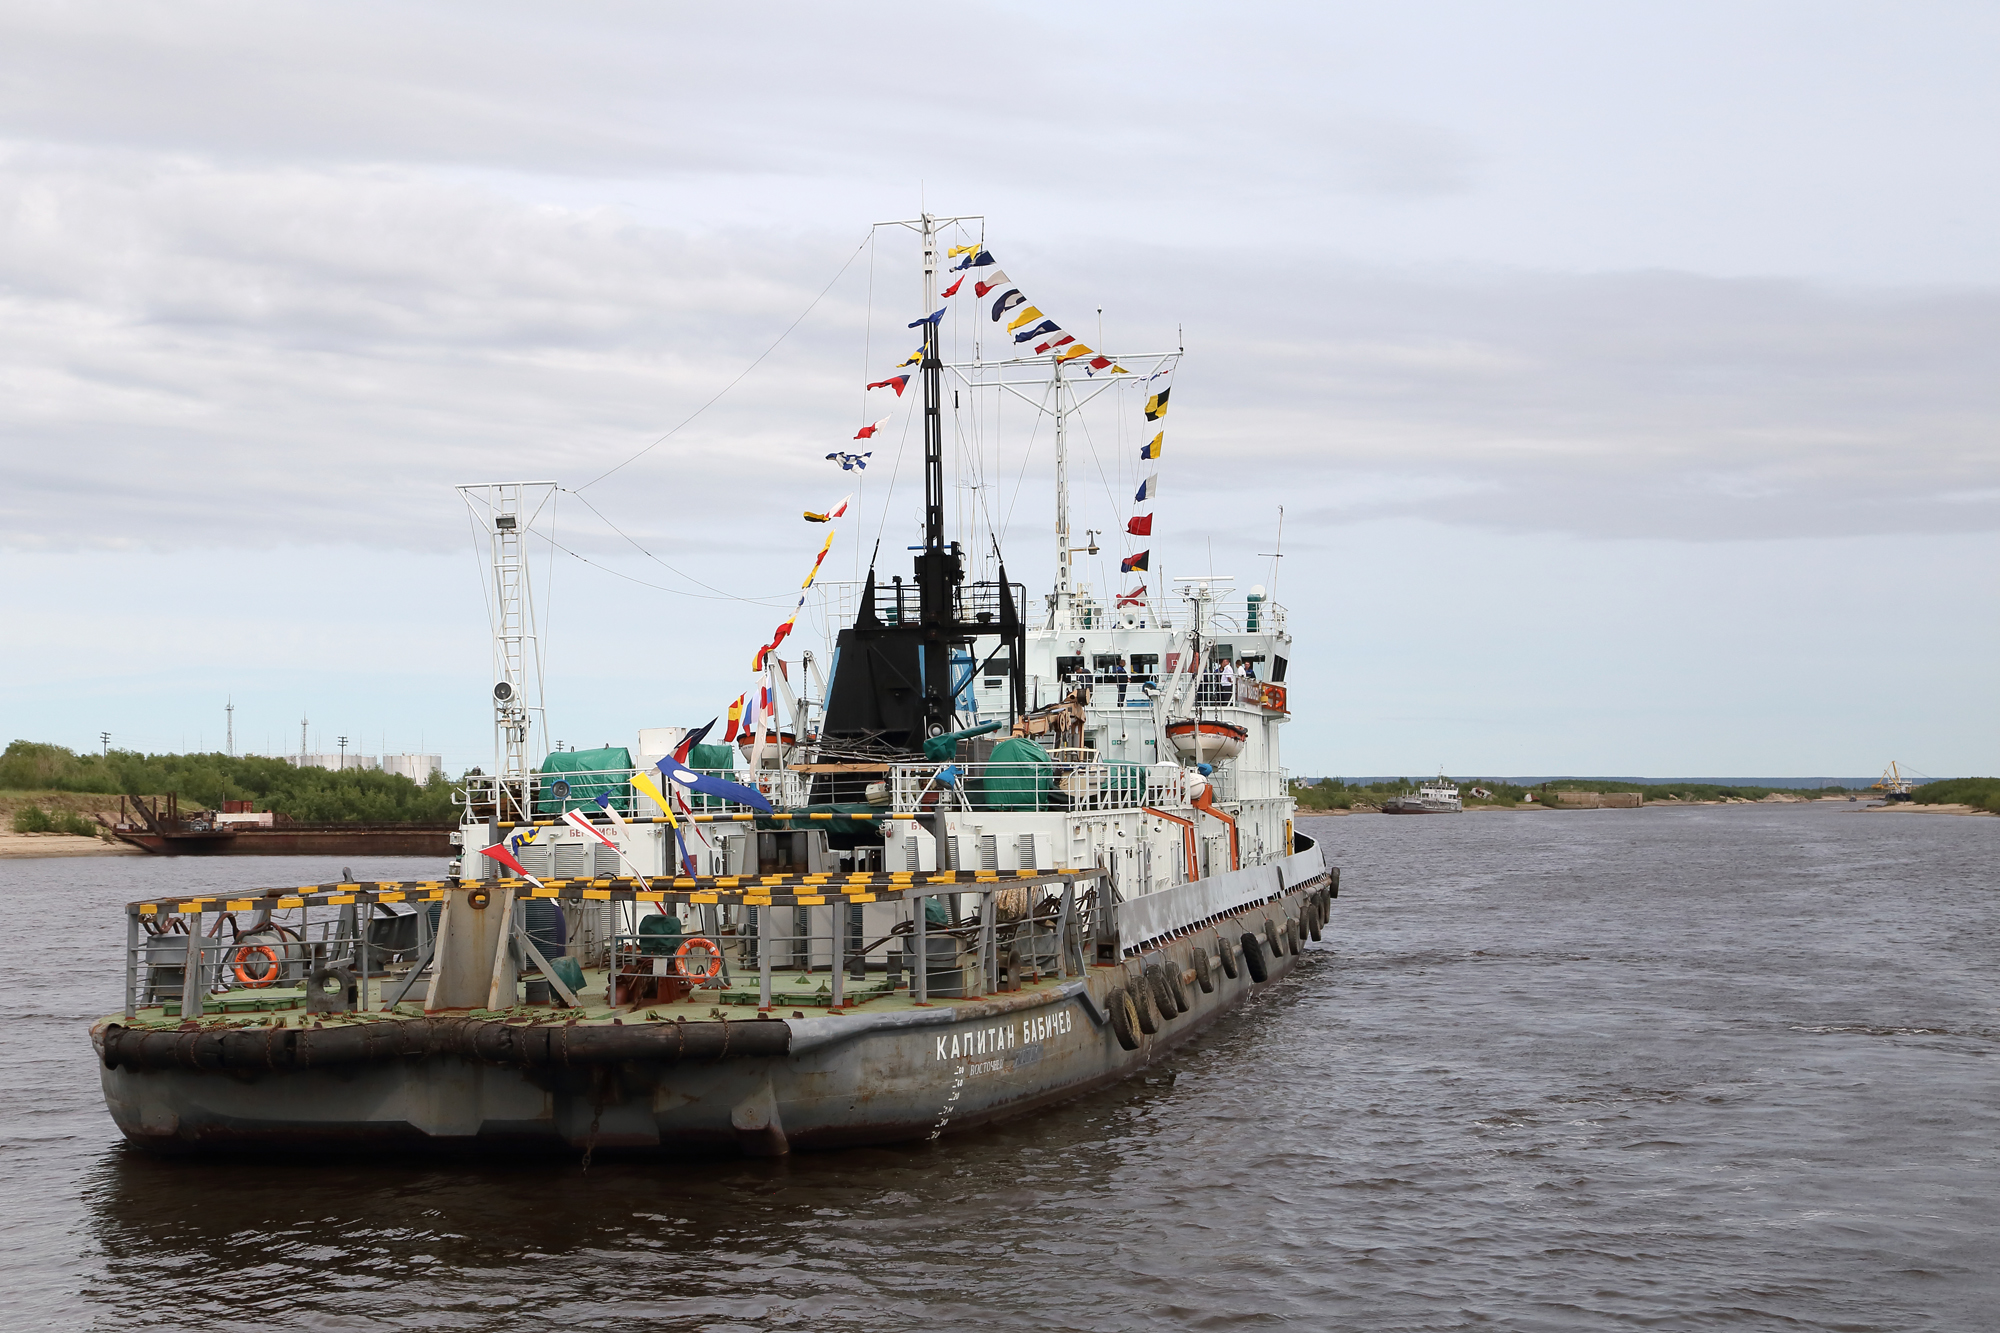 Лена – одна из главных судоходных артерий Северной Сибири. Судоходный период на реке продолжается 130-170 суток. Суда плавают практически по всему водному пути, однако большие речные суда могут передвигаться только по нижнему течению.